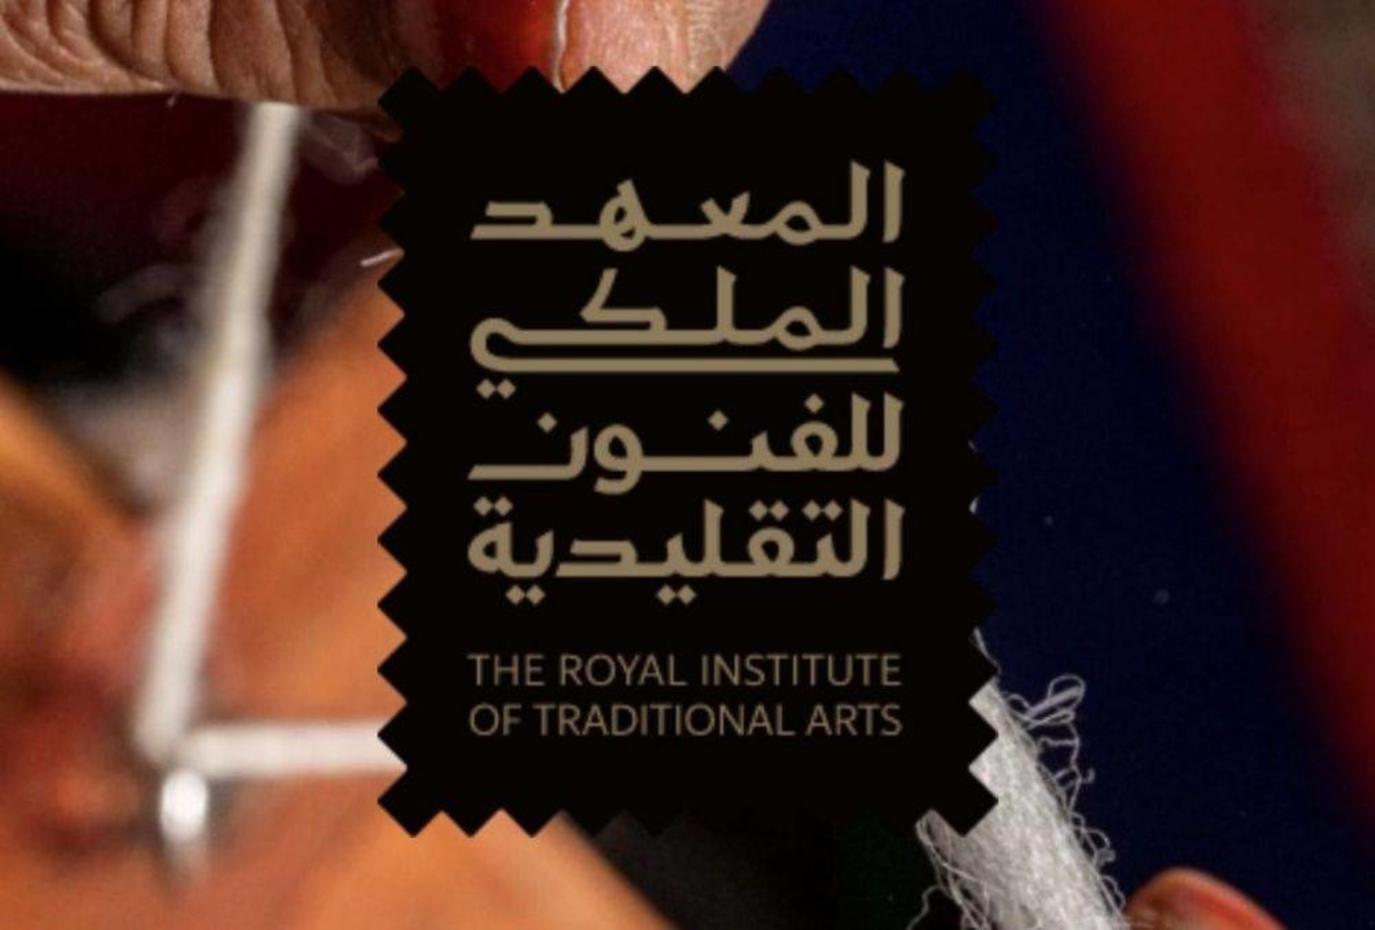 المعهد الملكي للفنون التقليدية